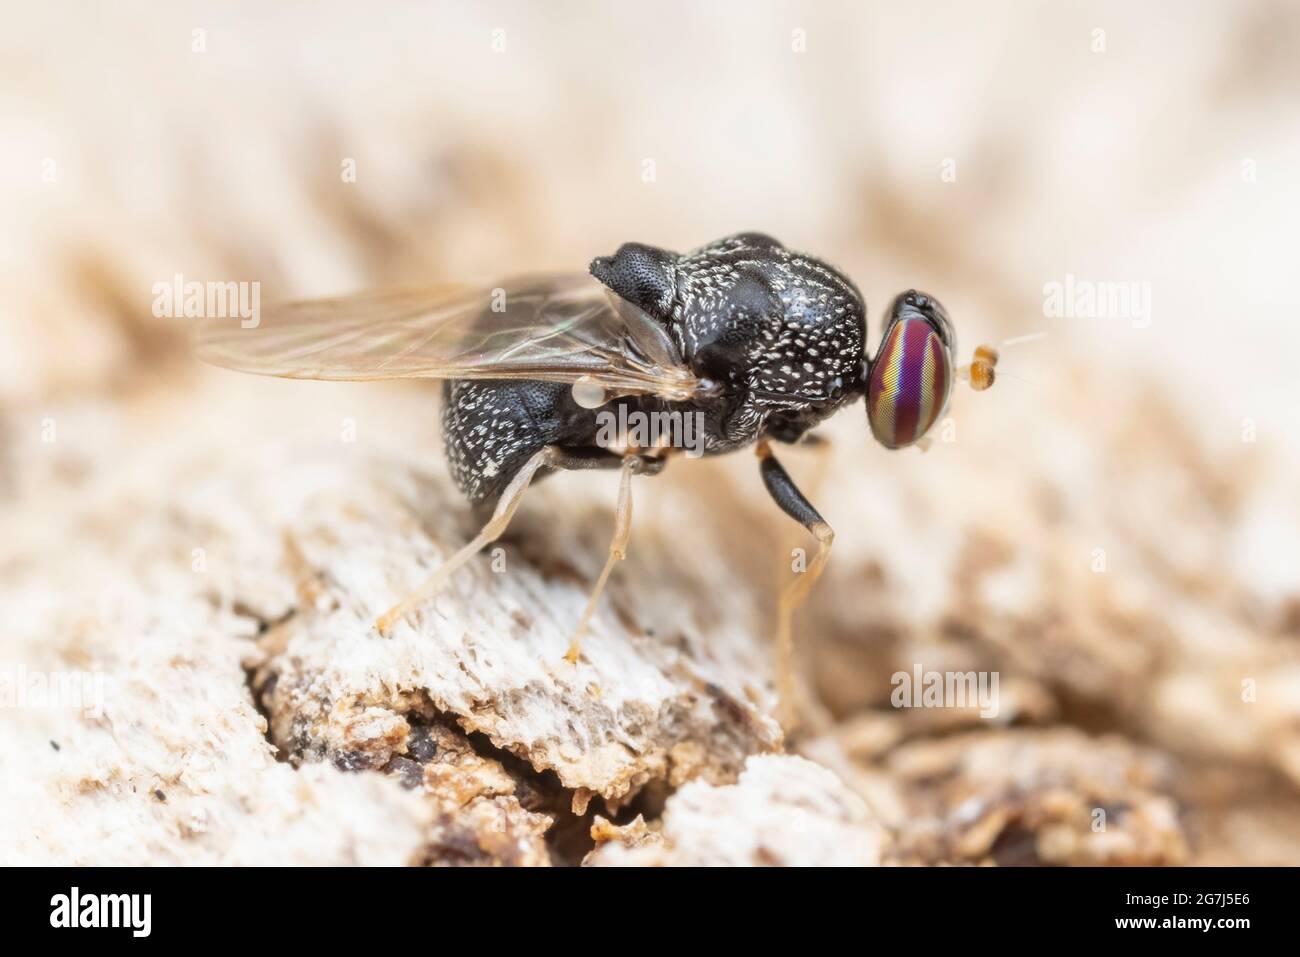 Una mosca Solider hembra (Gowdeyana punctifera) oviposita en el lado de un roble muerto. Foto de stock